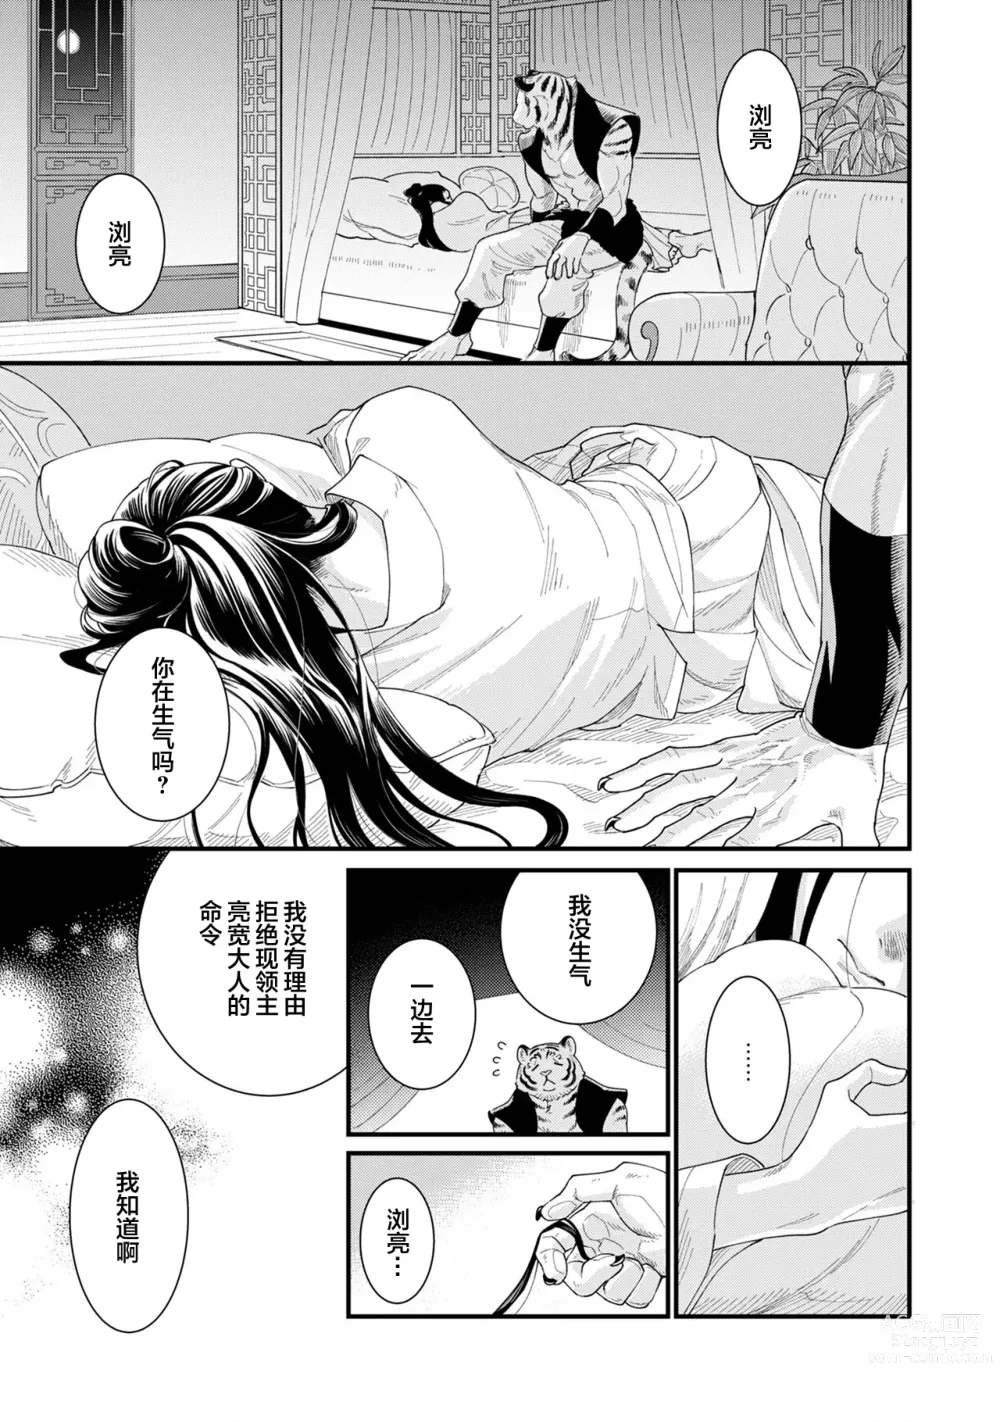 Page 15 of manga JINKO NO HARU